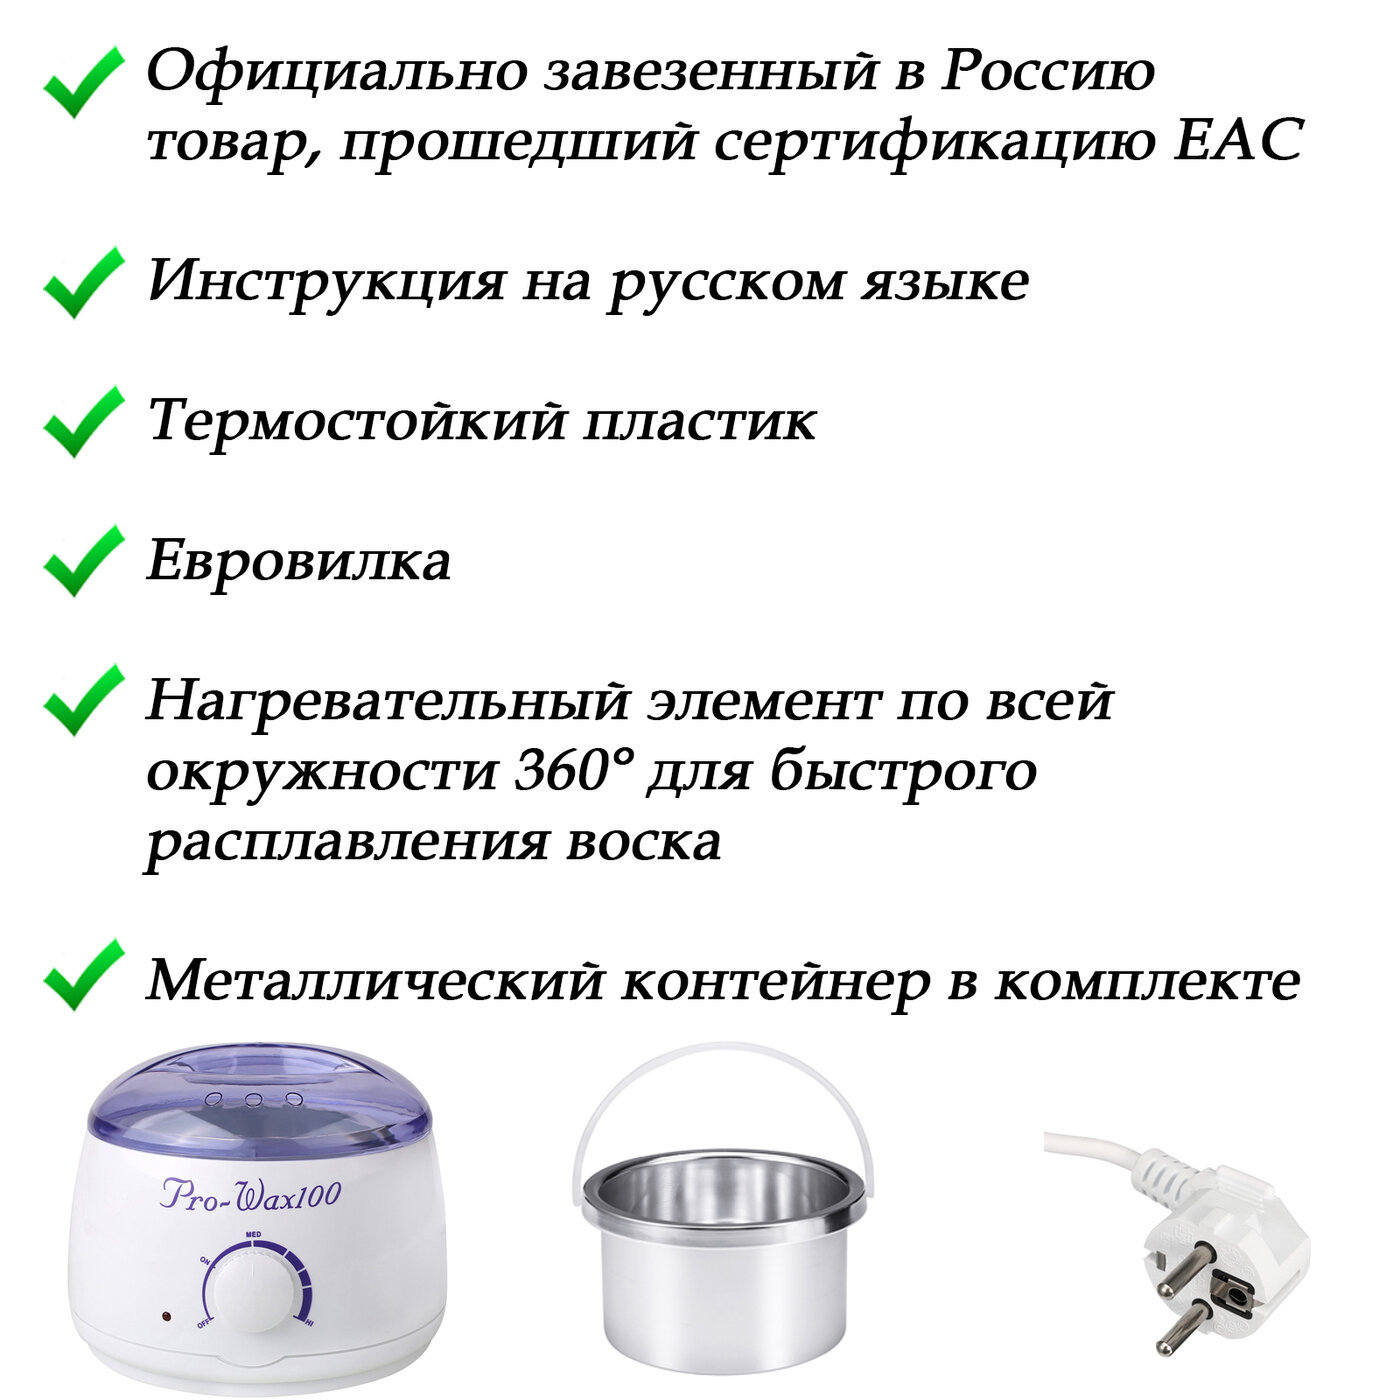 Как пользоваться воскоплавом при самостоятельном проведении депиляции в домашних условиях | musizmp3.ru